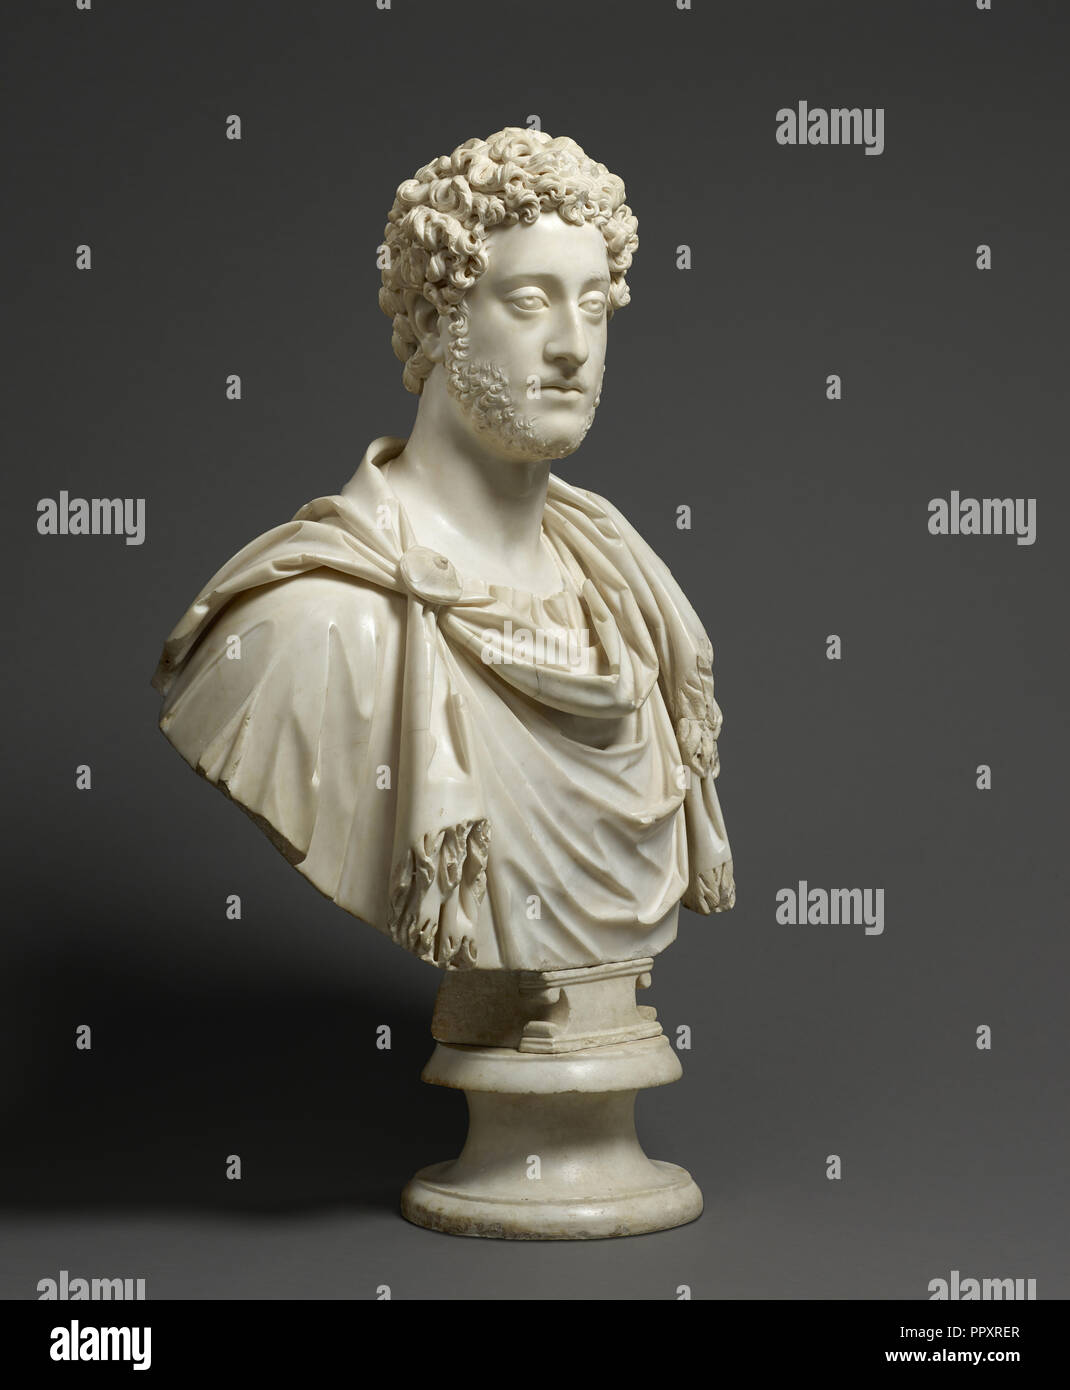 Busto del emperador Cómodo; Romano; Roma, Italia; 180 - 185; Mármol; 69,9 ×  61 × 22,8 cm, 92.9874 kg, 27 de 1,2 × 24 × 9 in., 205 lb Fotografía de  stock - Alamy